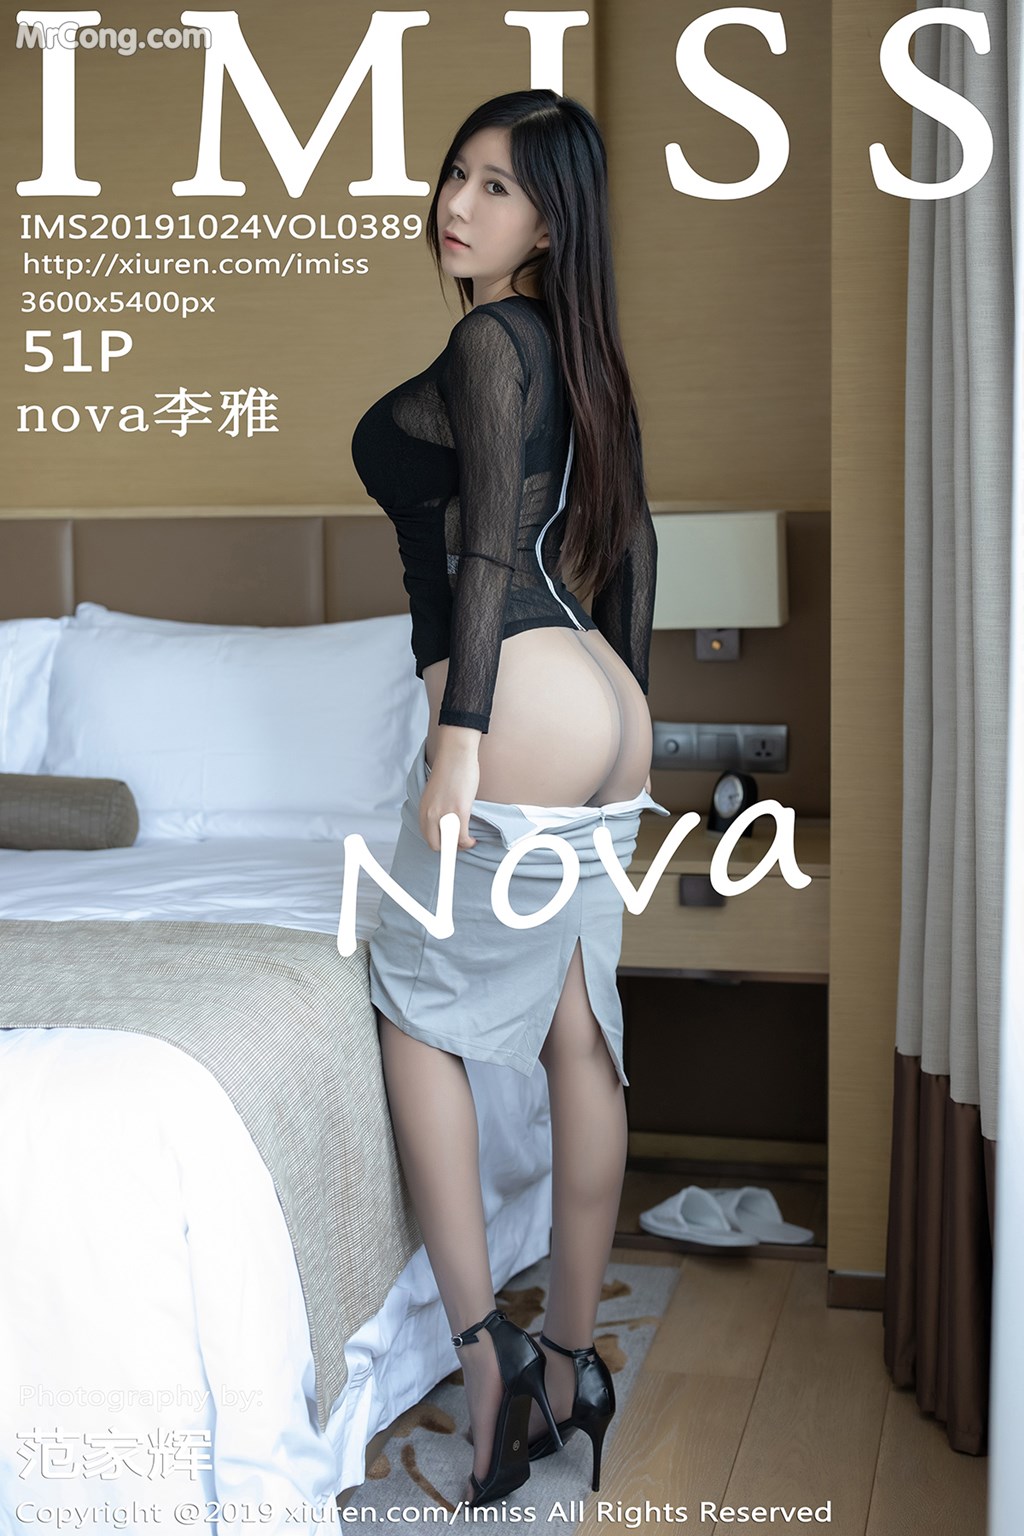 IMISS Vol.389: nova 李雅 (52 photos) photo 1-0